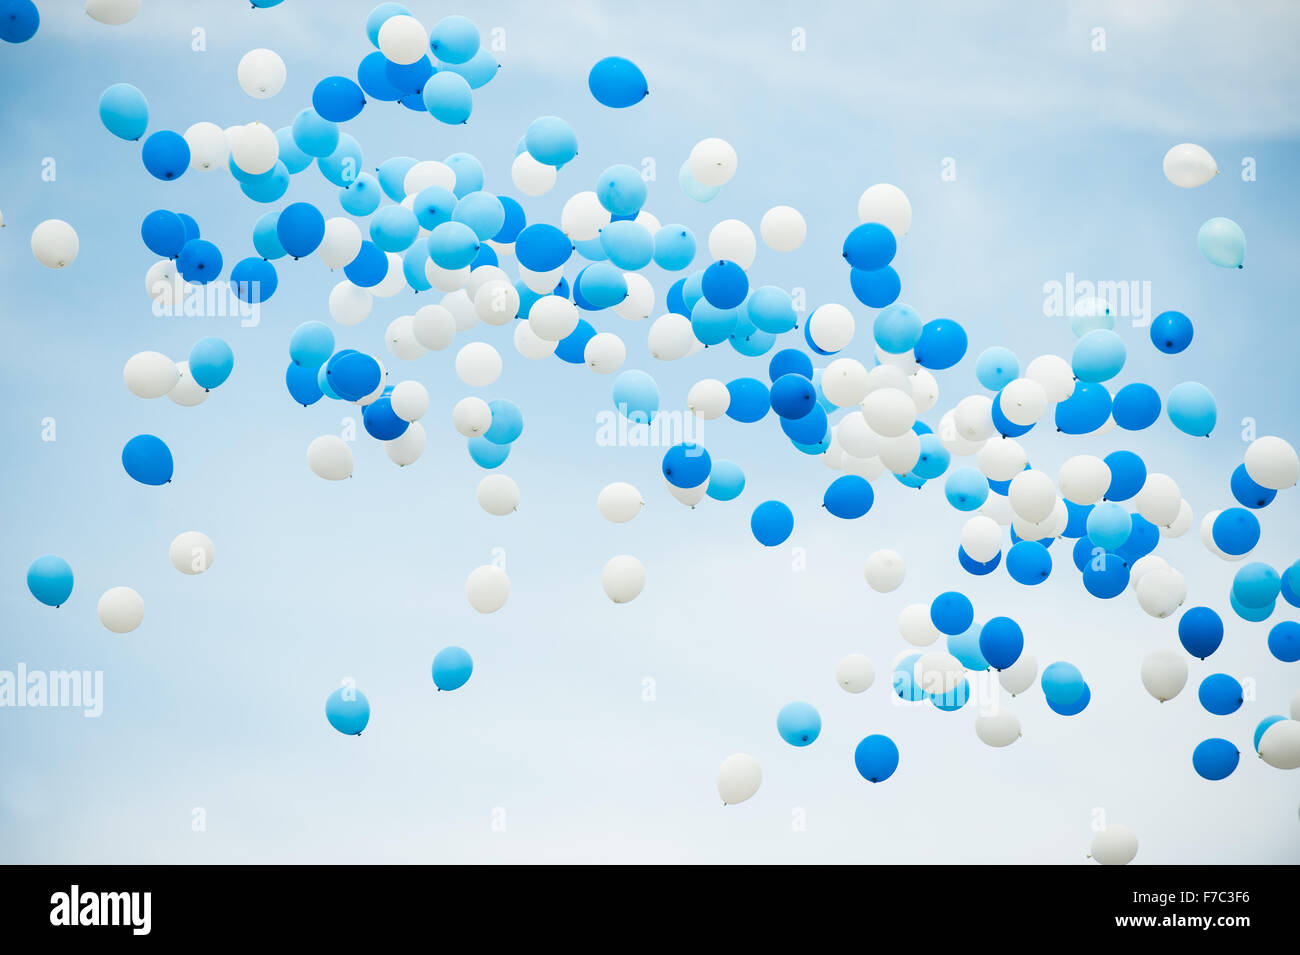 Luftballons in weiß und zwei Blautönen auf einem bewölkten Himmelshintergrund. Stockfoto